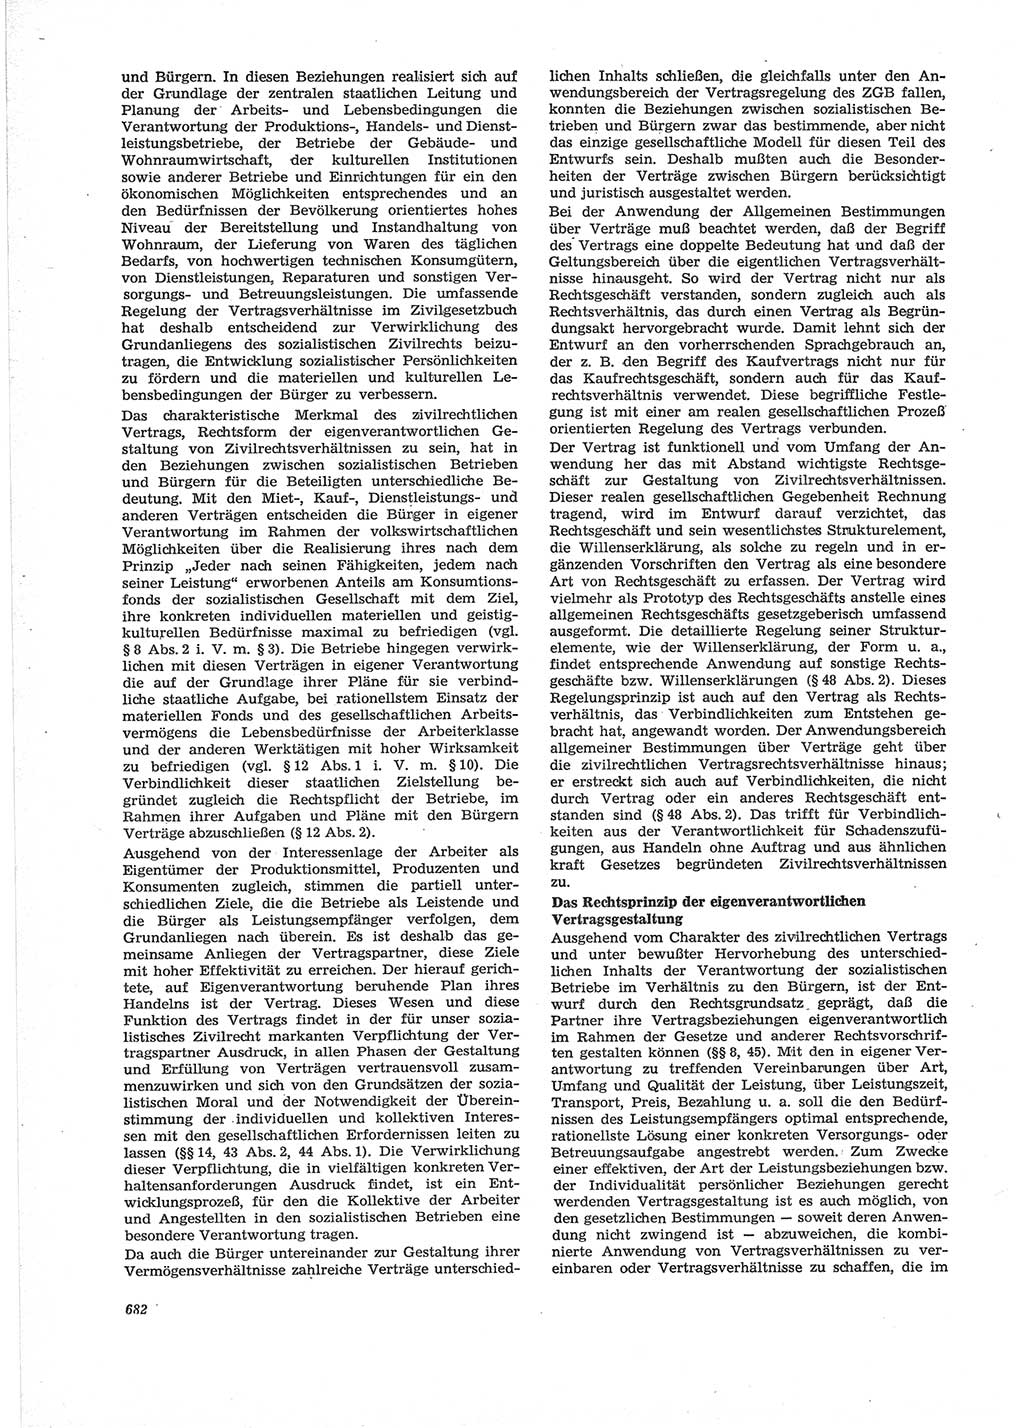 Neue Justiz (NJ), Zeitschrift für Recht und Rechtswissenschaft [Deutsche Demokratische Republik (DDR)], 28. Jahrgang 1974, Seite 682 (NJ DDR 1974, S. 682)